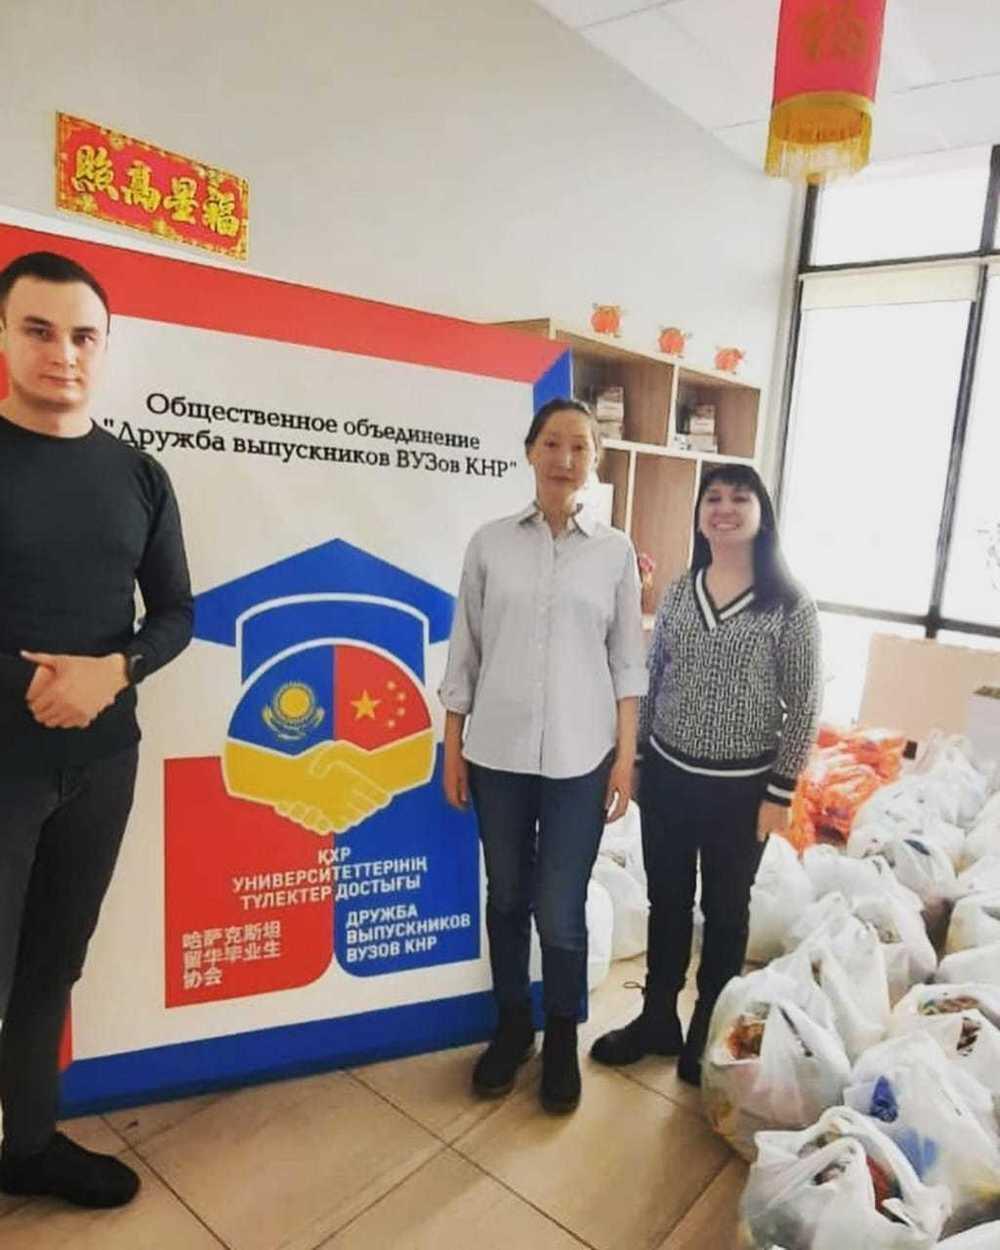 100 продуктовых корзин раздали выпускники китайских вузов в качестве благотворительности. Фото: ОО Дружба выпускников вузов КНР